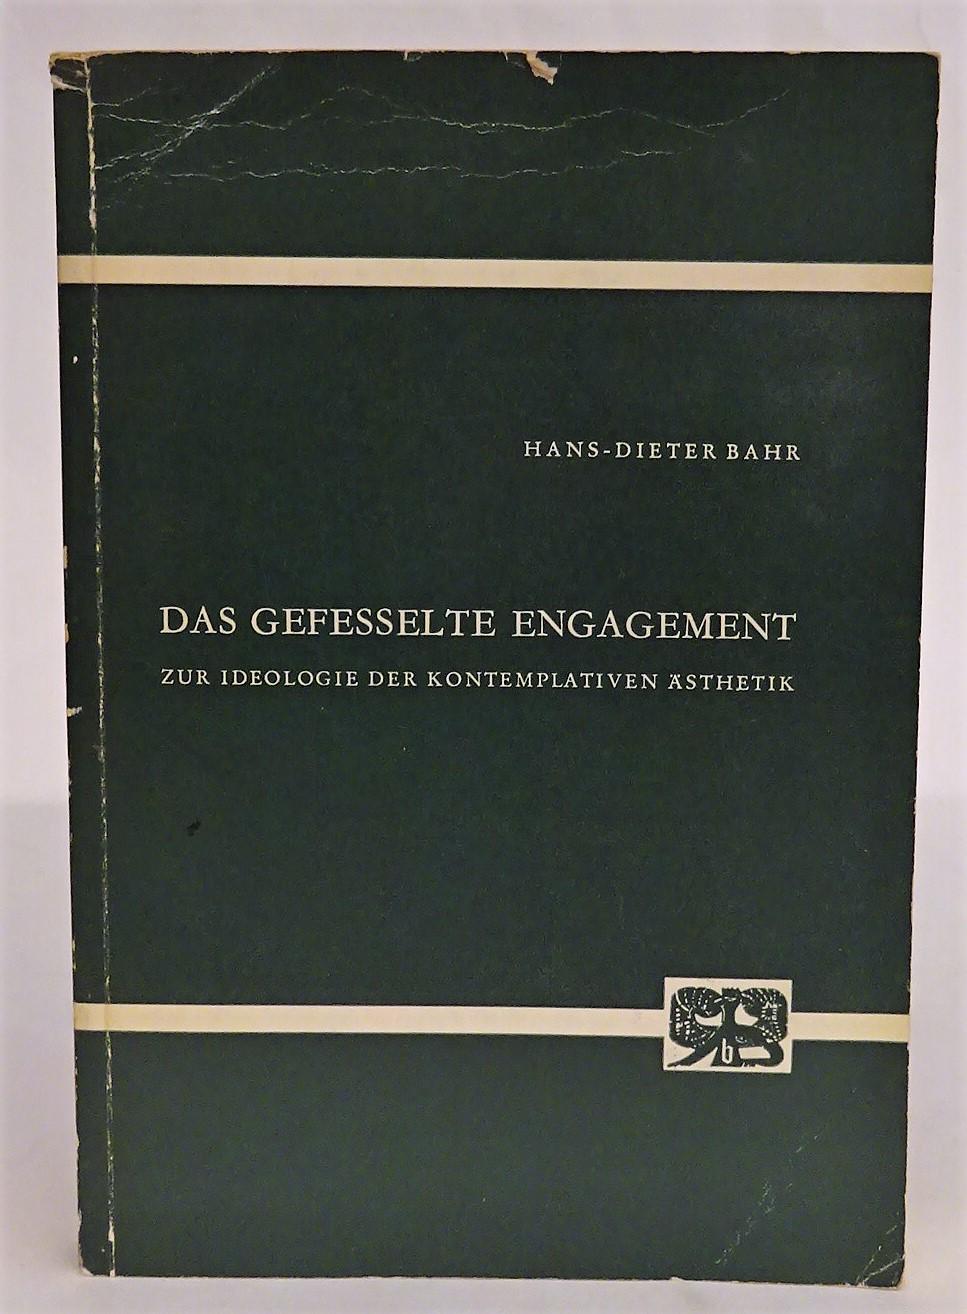 Das gefesselte Engagement. Zur Ideologie der kontemplativen Ästhetik. - Bahr, Hans-Dieter